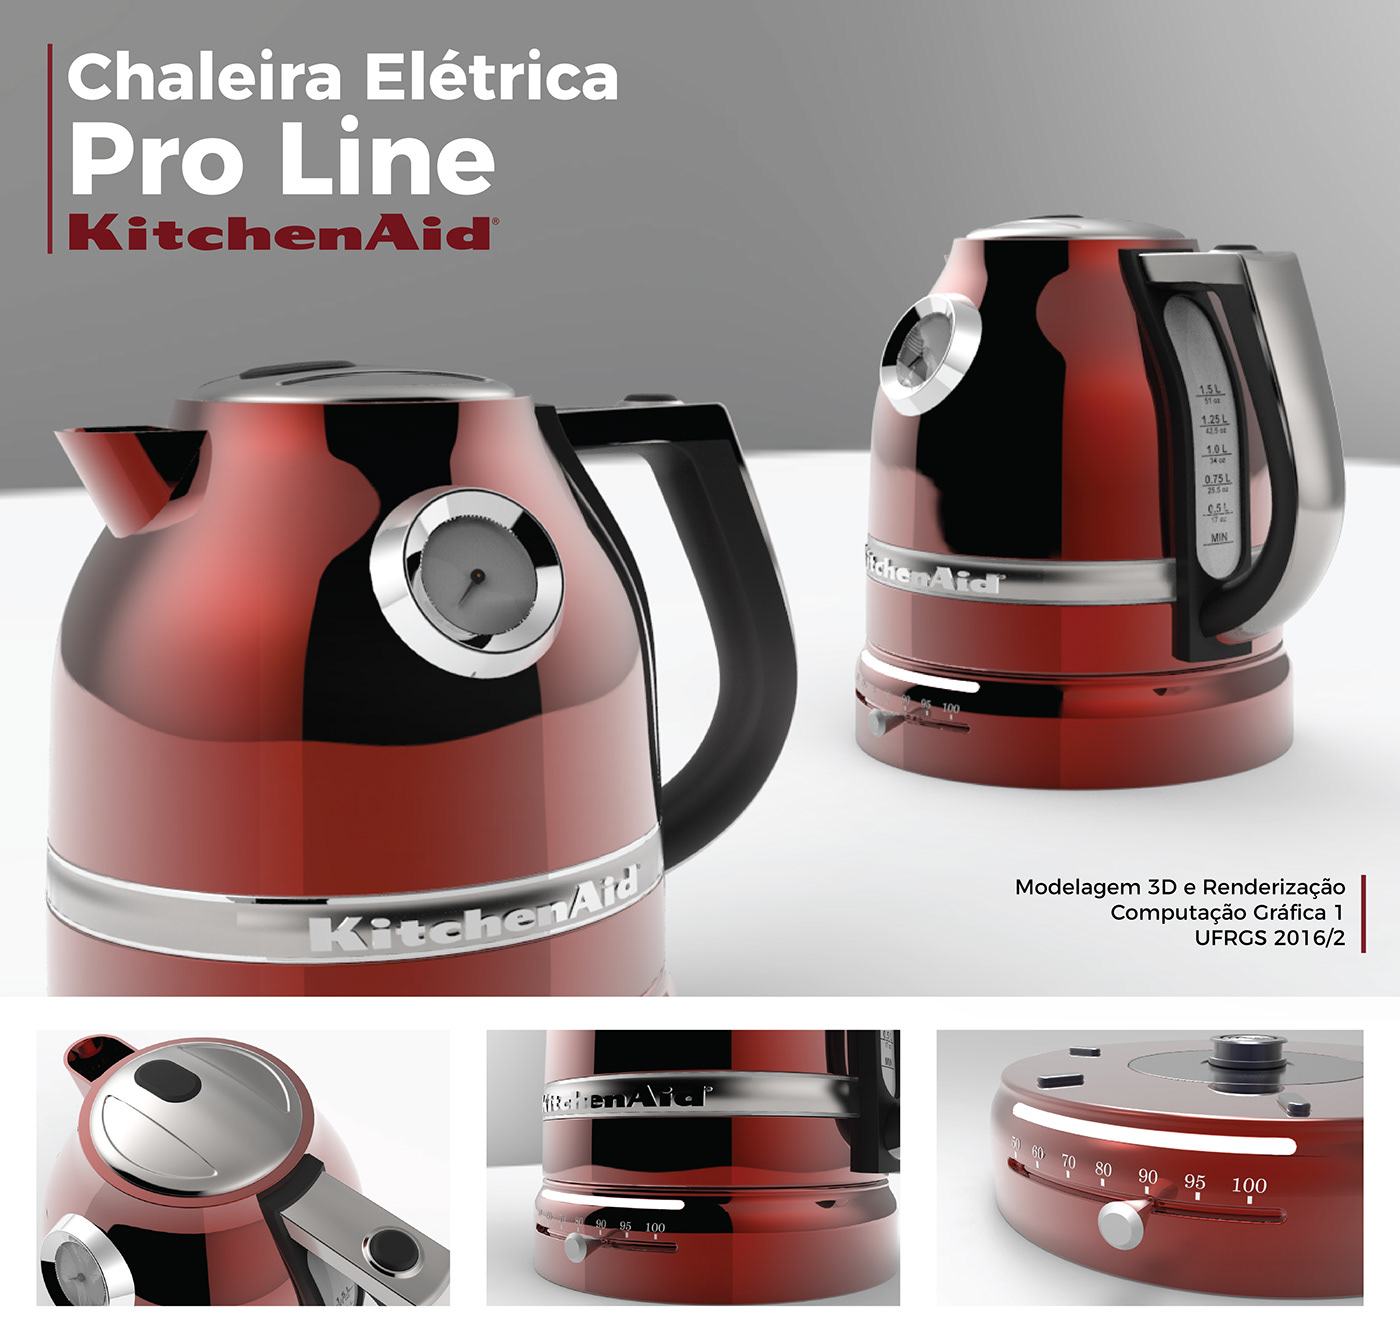 chaleira KitchenAid 3dmodel Rhinoceros keyshot